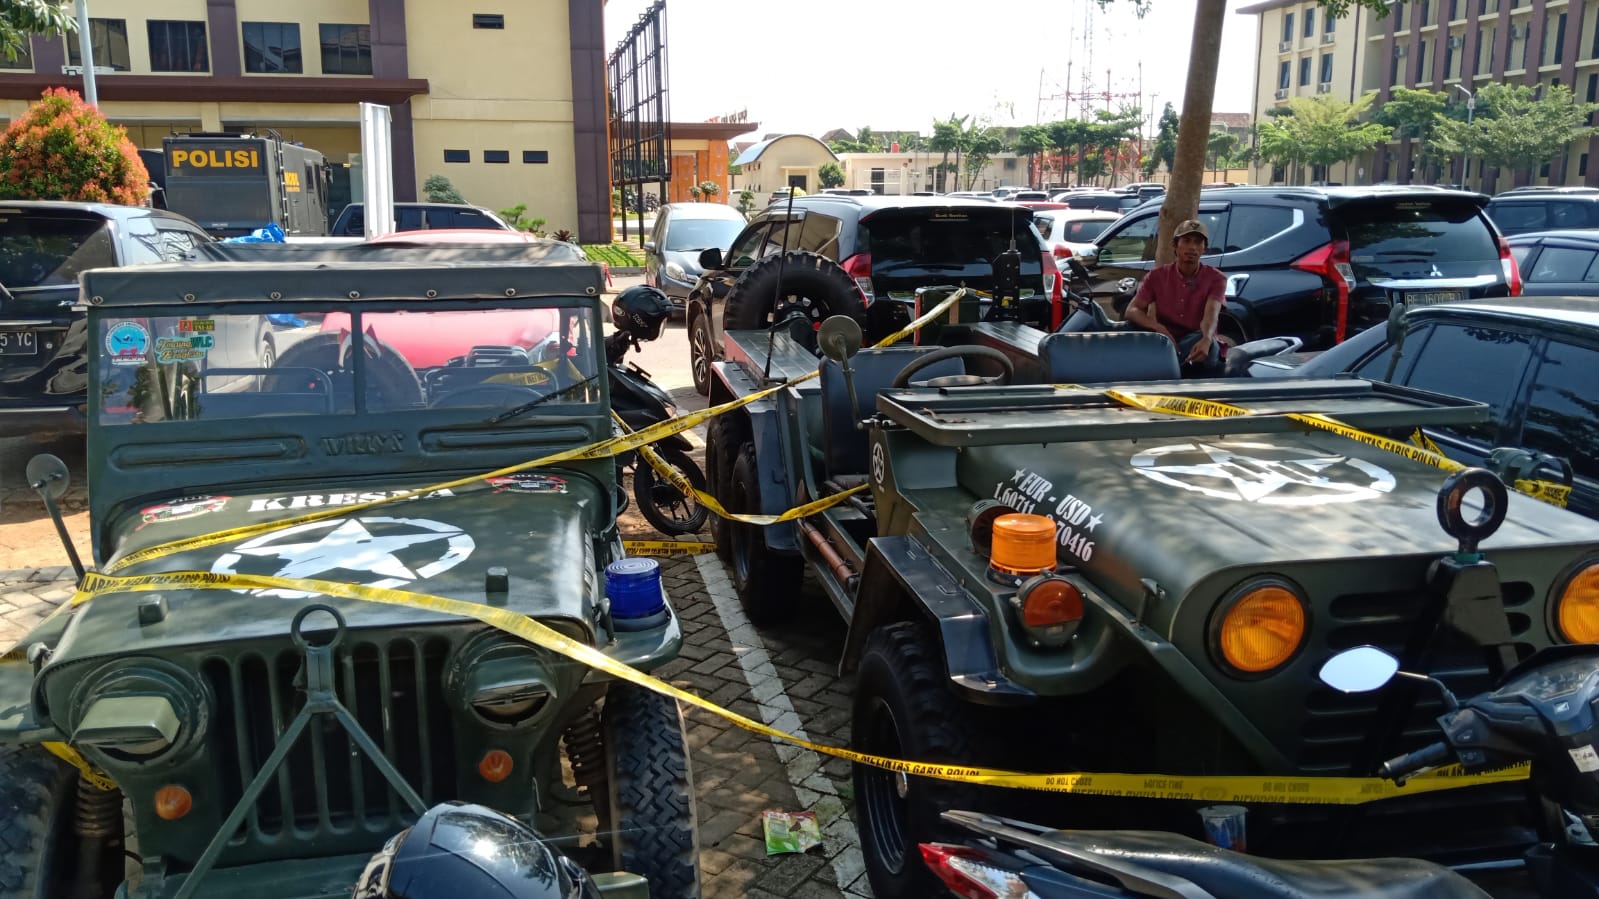 Terungkap, Jeep Perang Dunia II yang Terparkir di Mapolda Lampung Rupanya Barang Bukti Kasus Ini... 